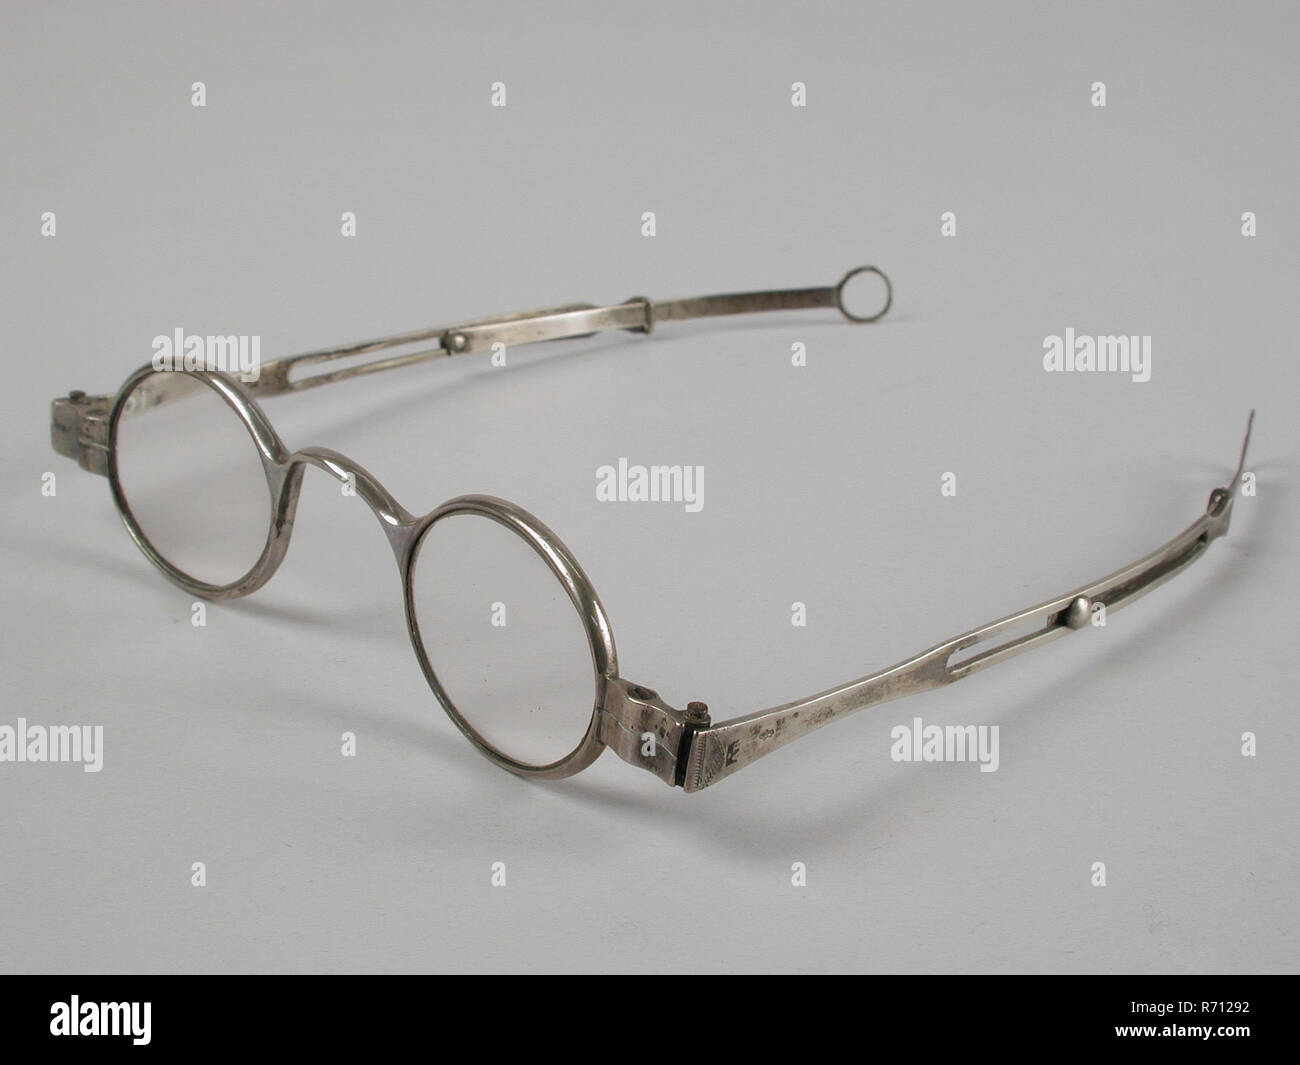 Gafas con lentes ovalados en la fuerza, Marco plateado y plumas,  espectáculo recto ajustable lente ojo de vidrio equipos metal plateado,  gafas con lentes ovalados en la fuerza. El bastidor y el